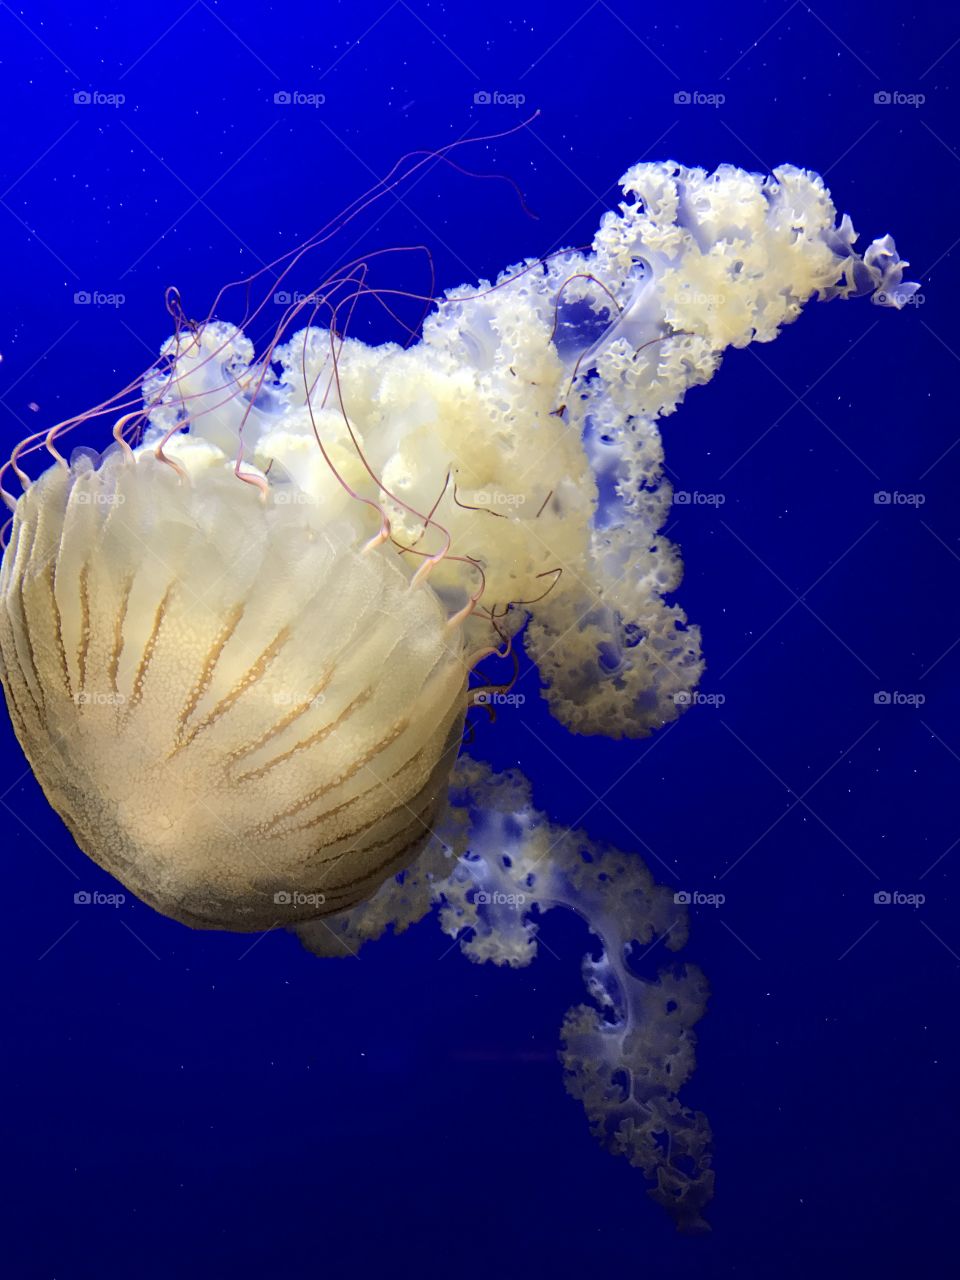 Georgia Aquarium | Atlanta, GA